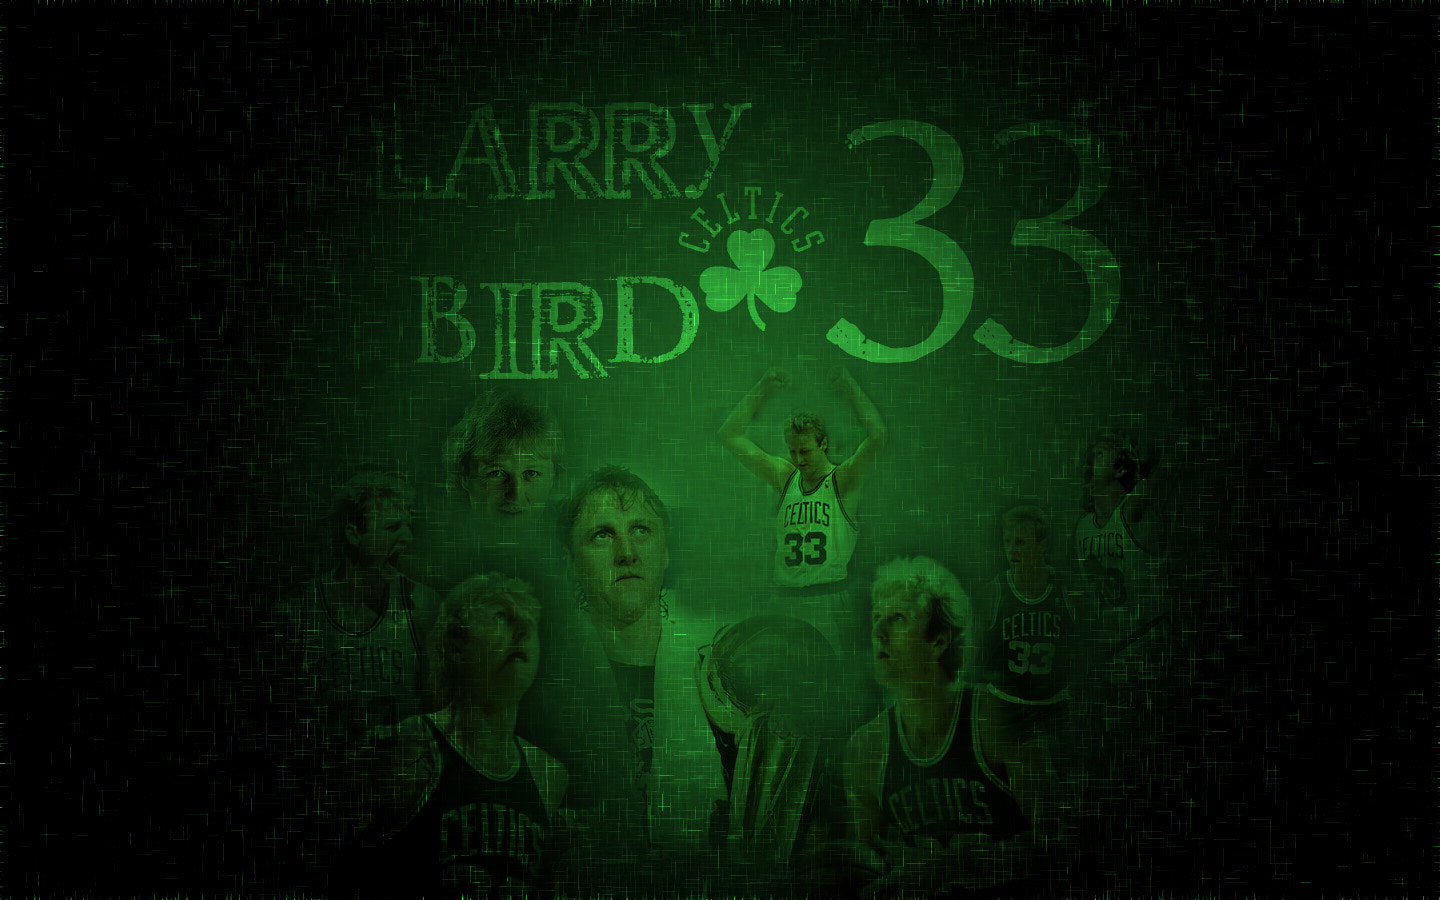 Larry Bird Widescreen Wallpaper | Basketball Wallpapers at